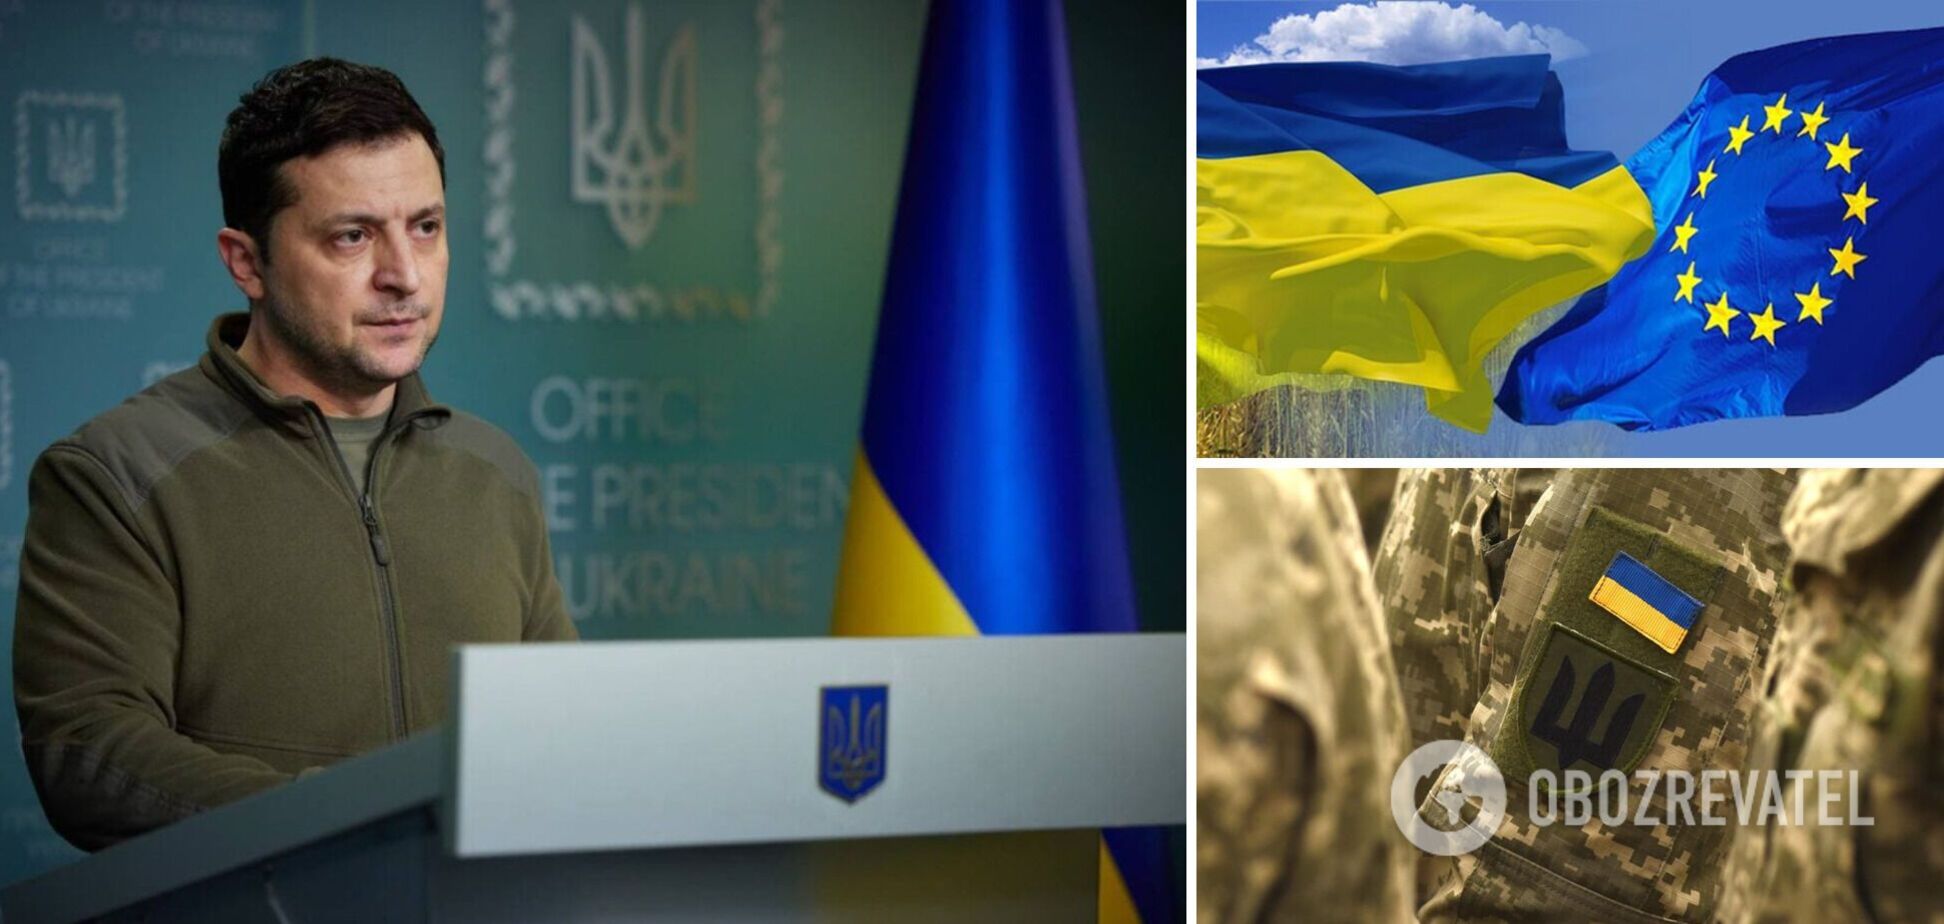 Україна просить про приєднання до ЄС за новою спецпроцедурою та продовжує боротьбу. Звернення Зеленського